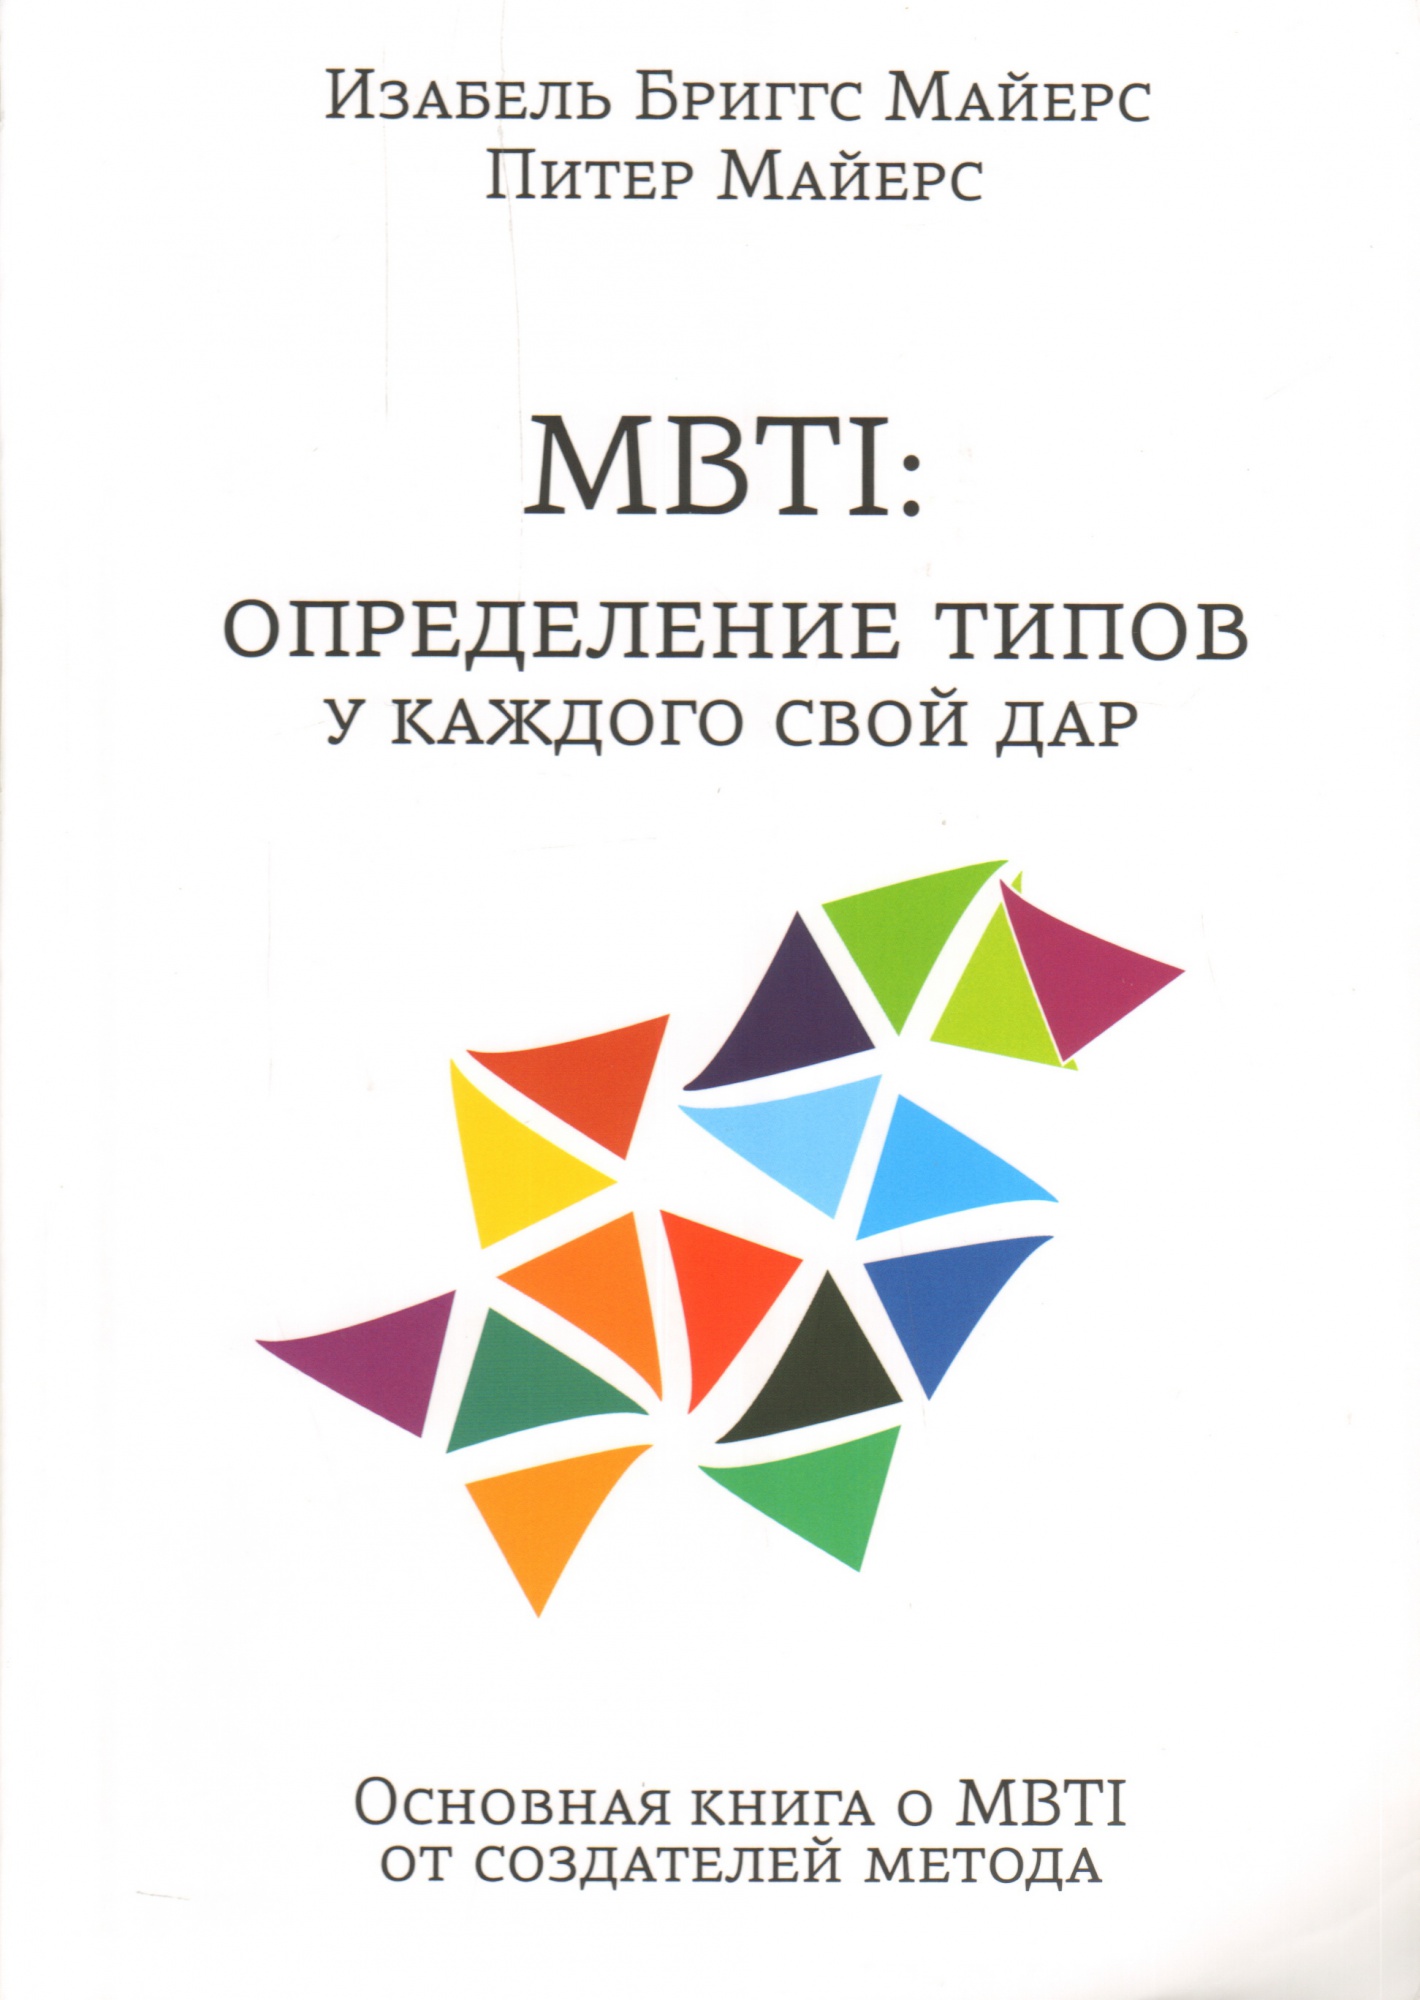 Книга "MBTI определение типов"